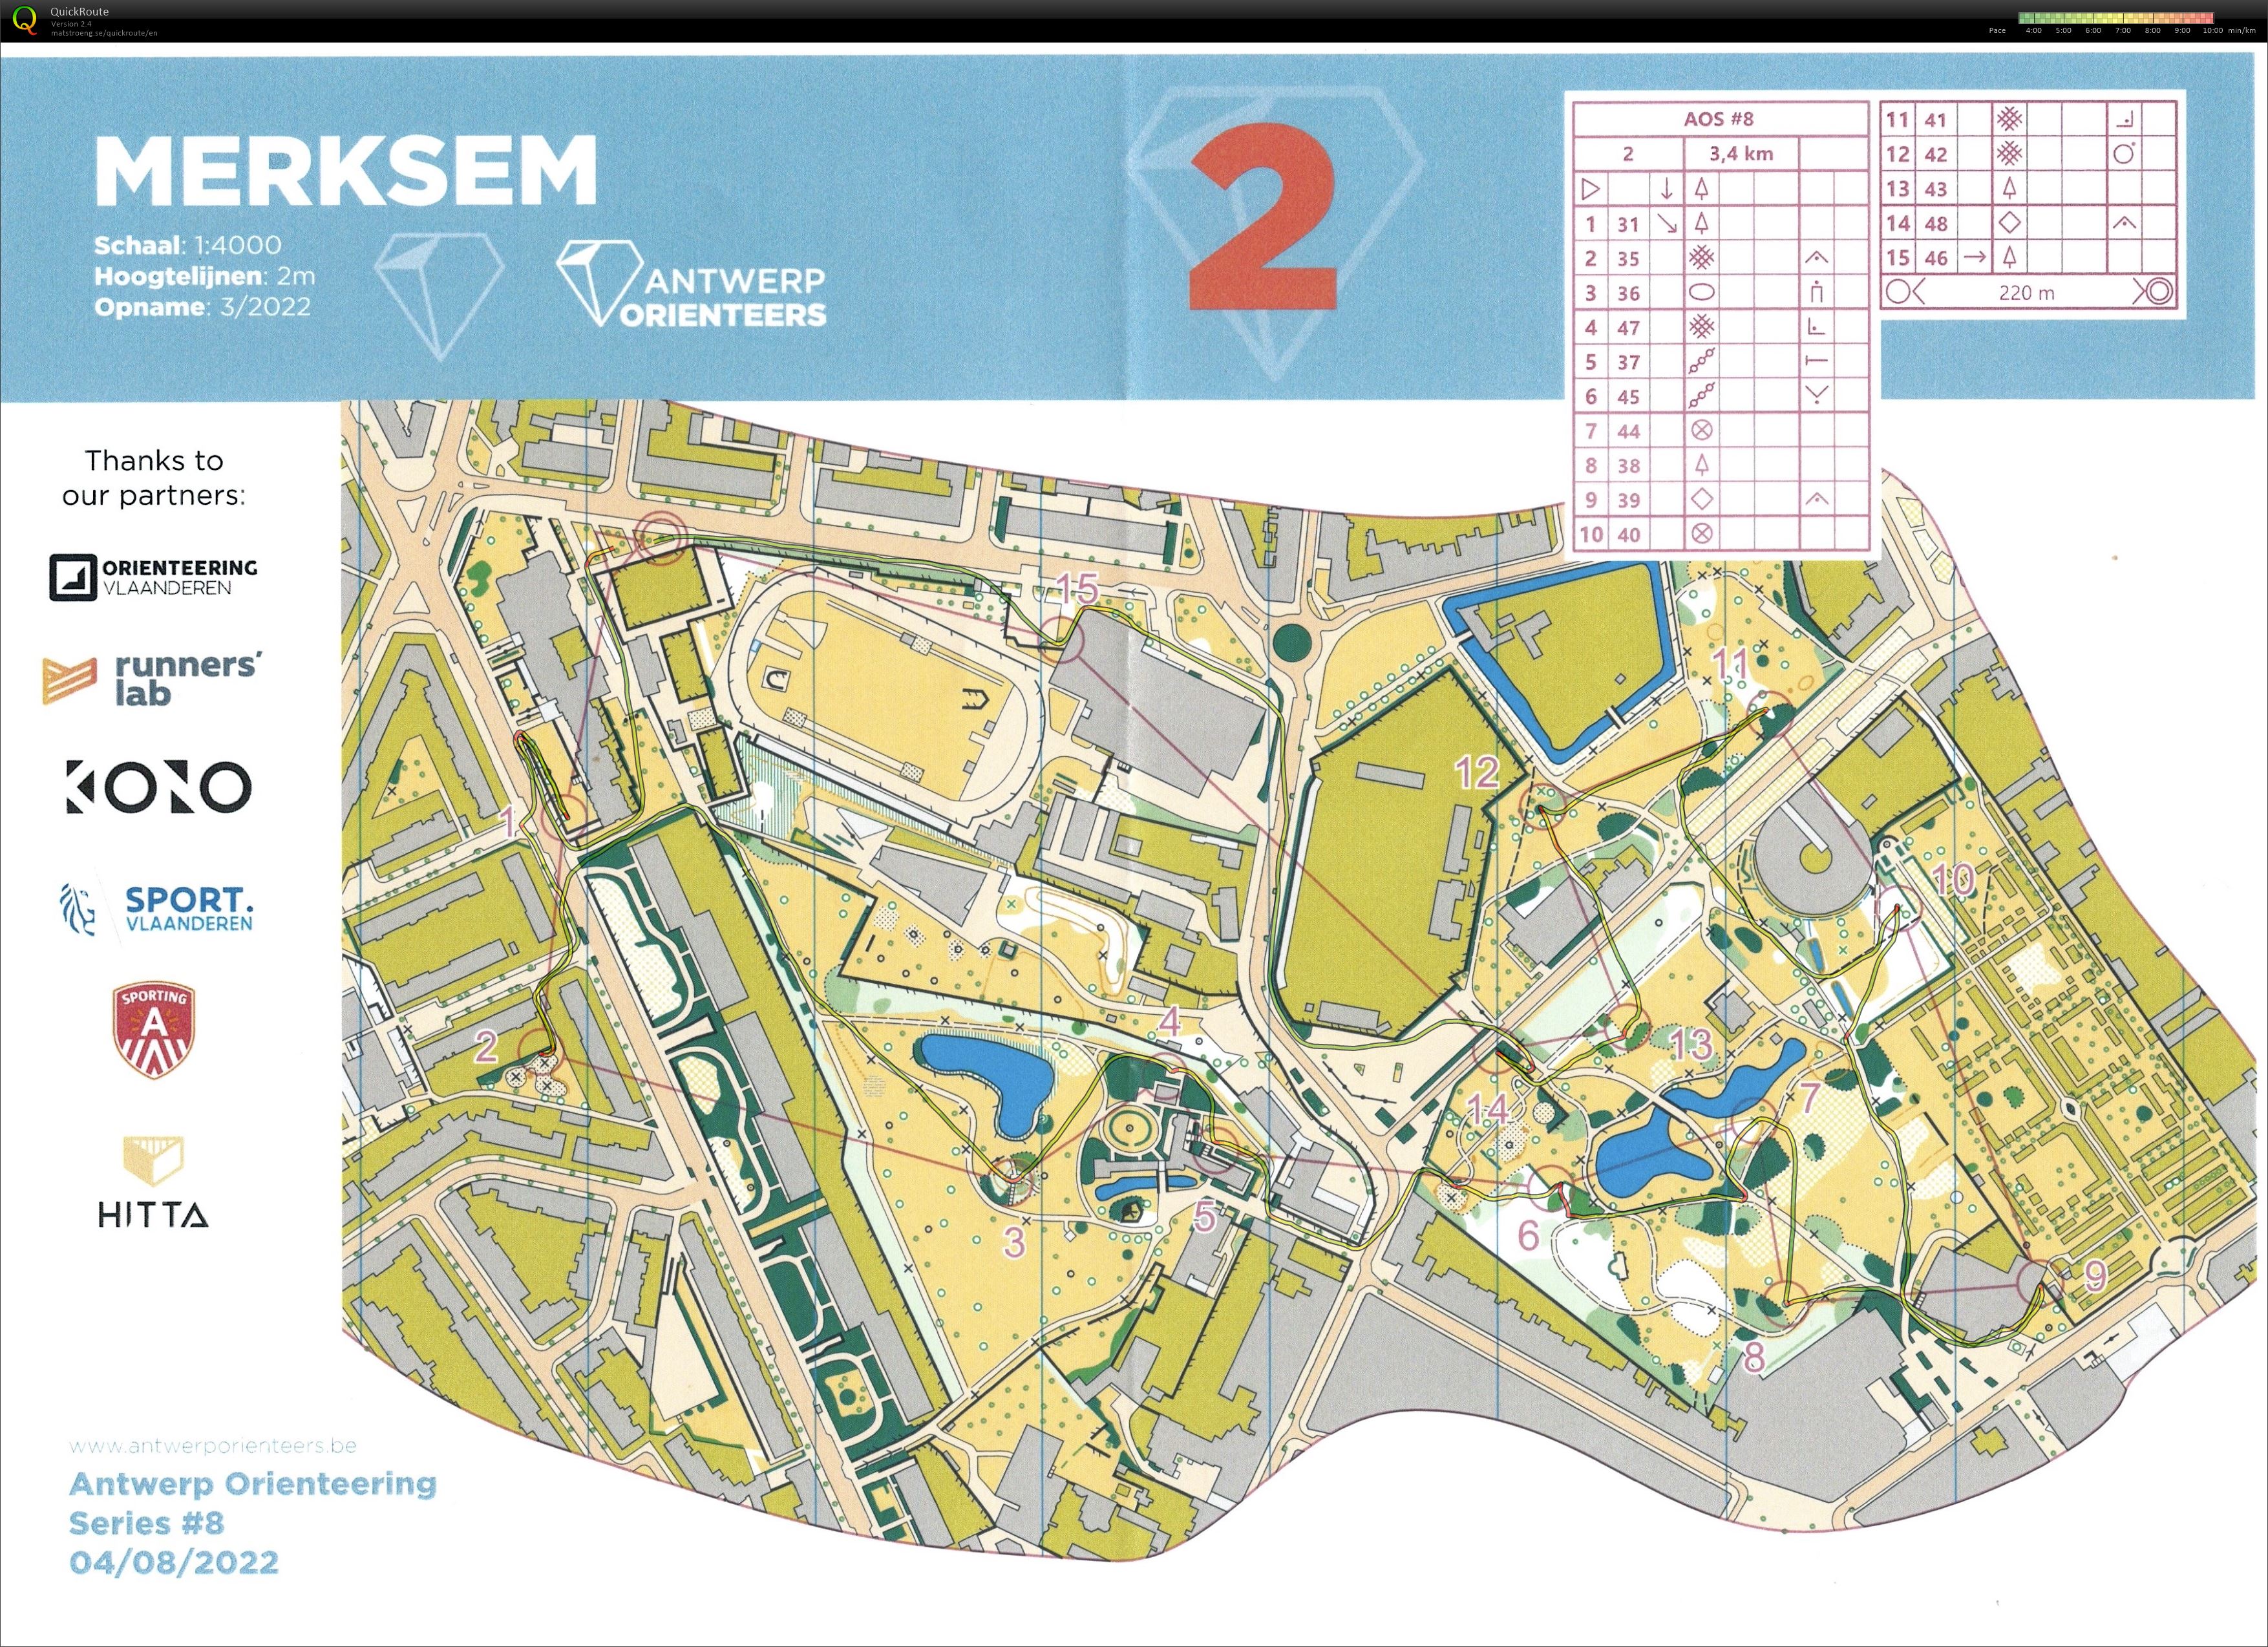 Antwerp Orienteering Series - Merksem - 2 (04-08-2022)